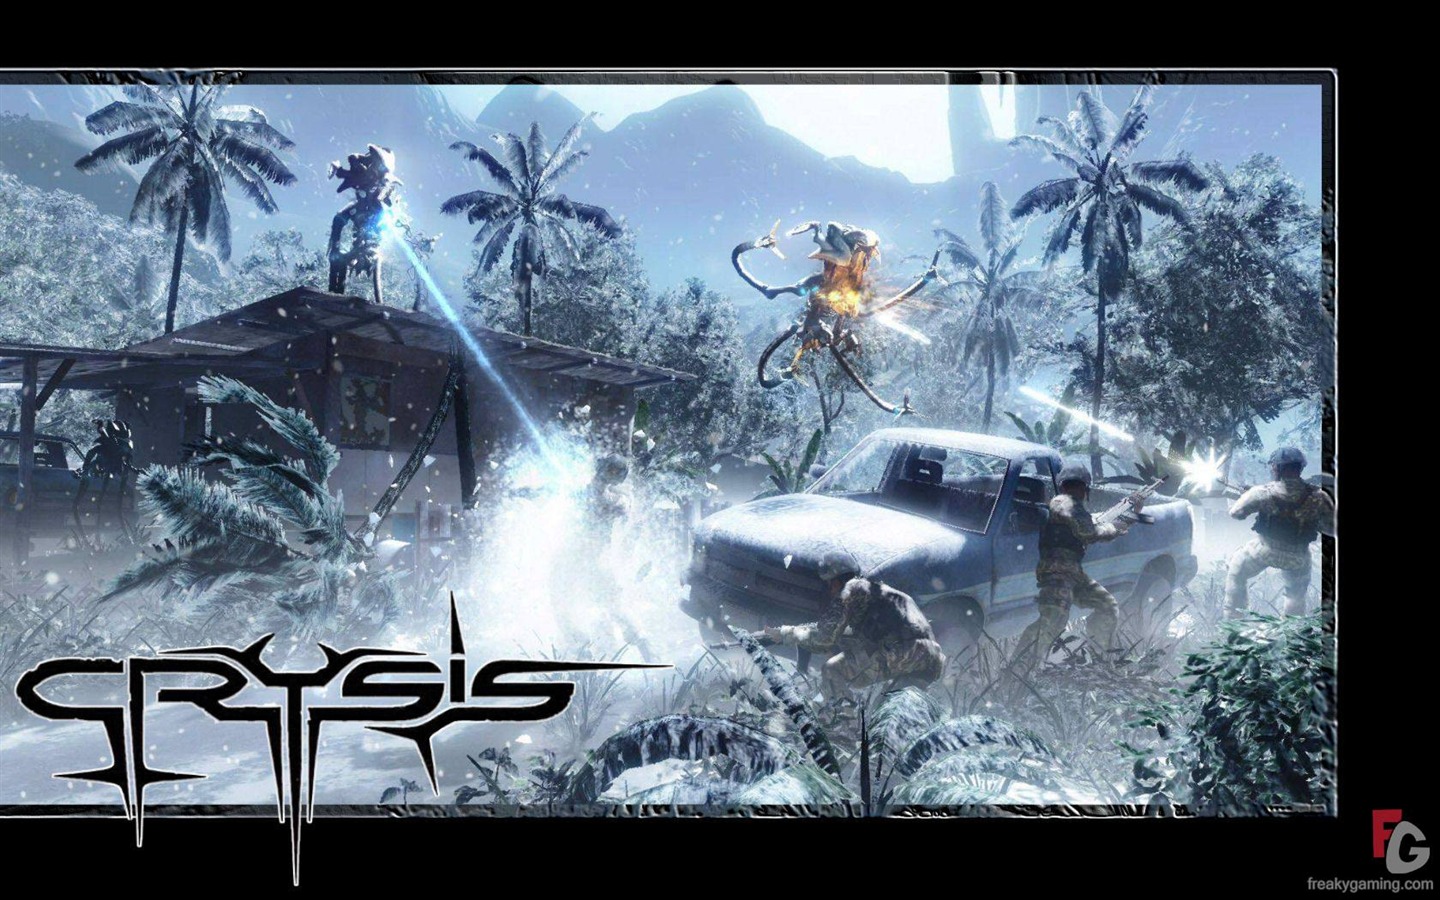  Crysisの壁紙(3) #17 - 1440x900